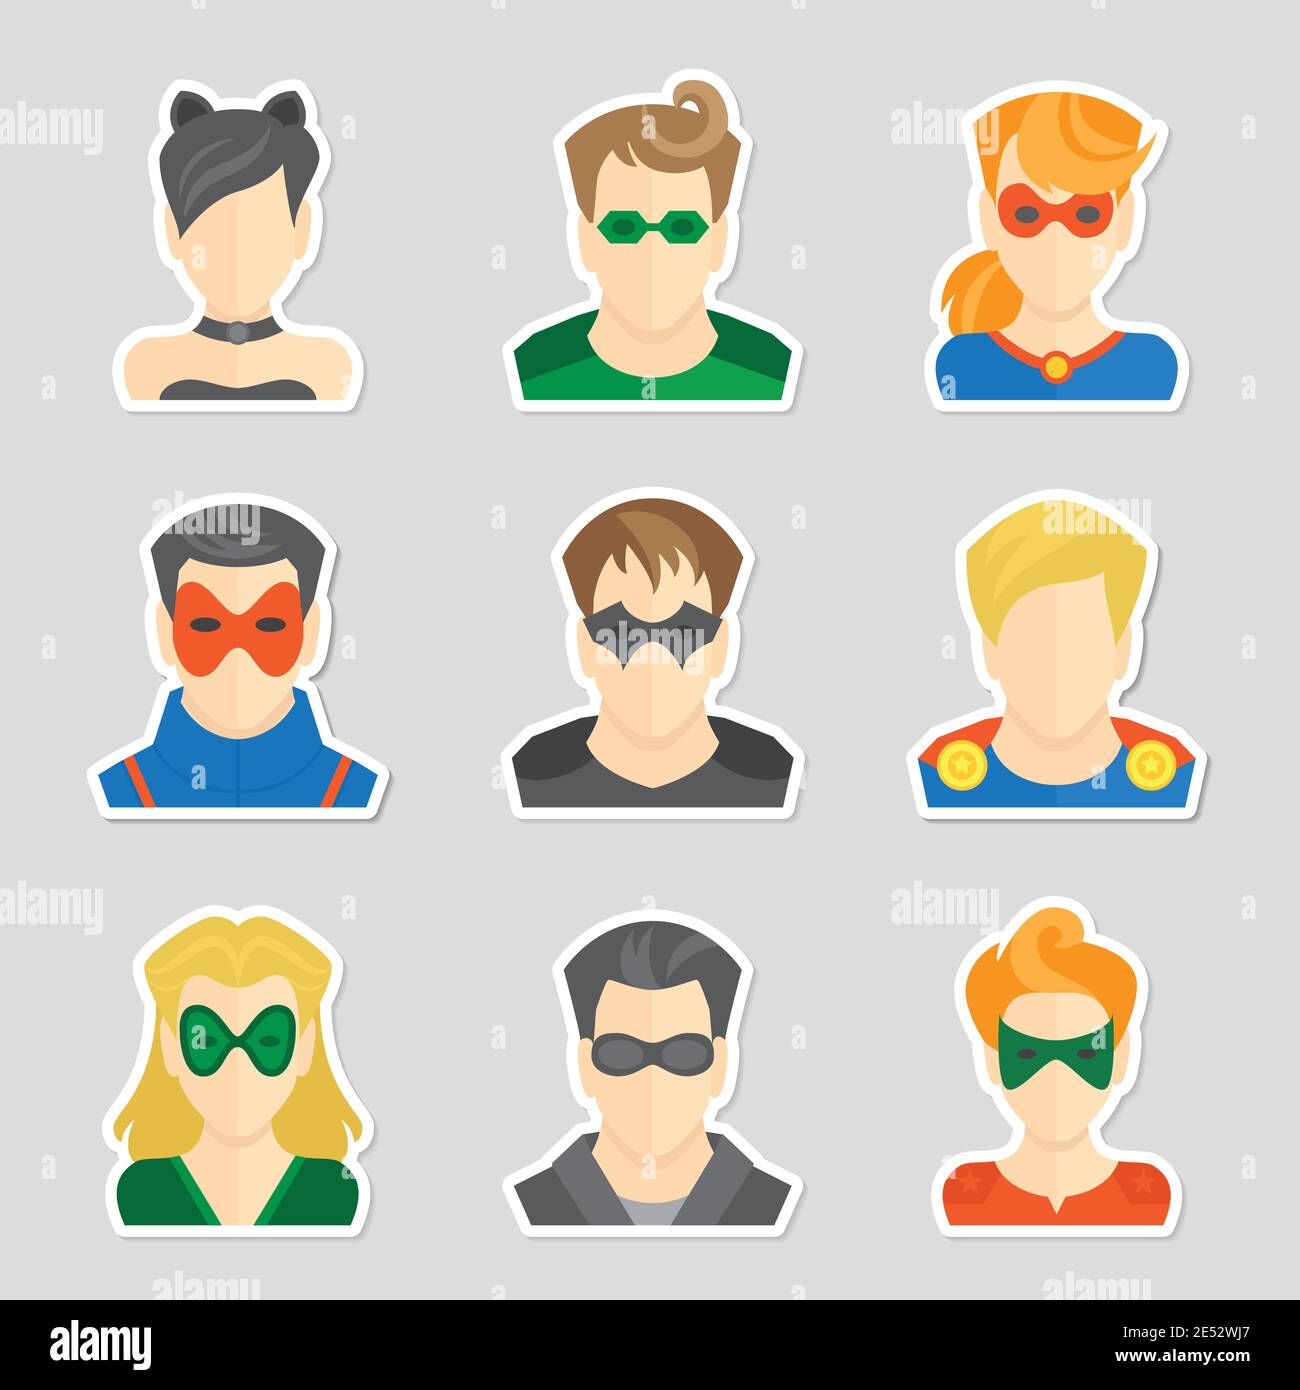 Conjunto de personajes cómicos superhéroes iconos avatar en estilo